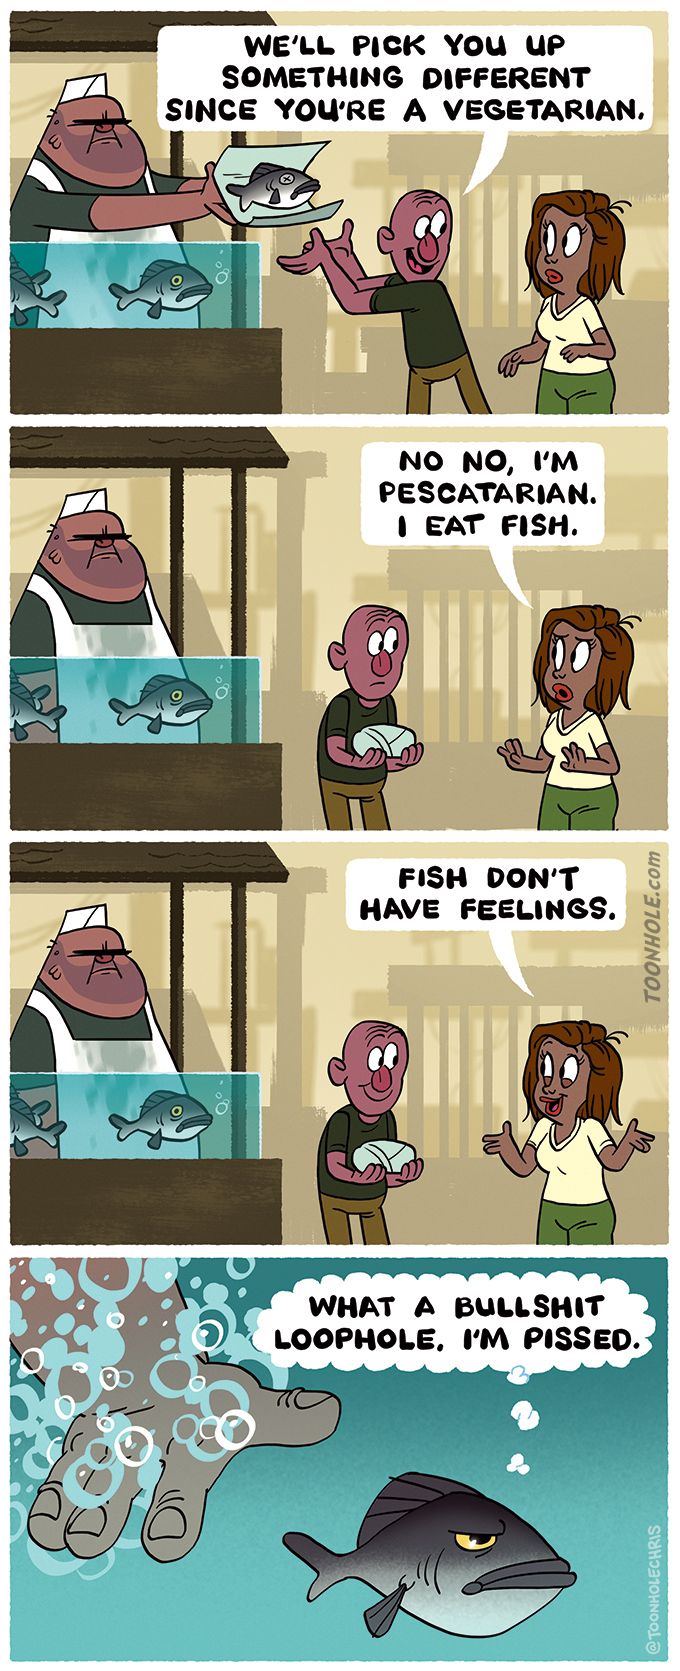 Pescatarian